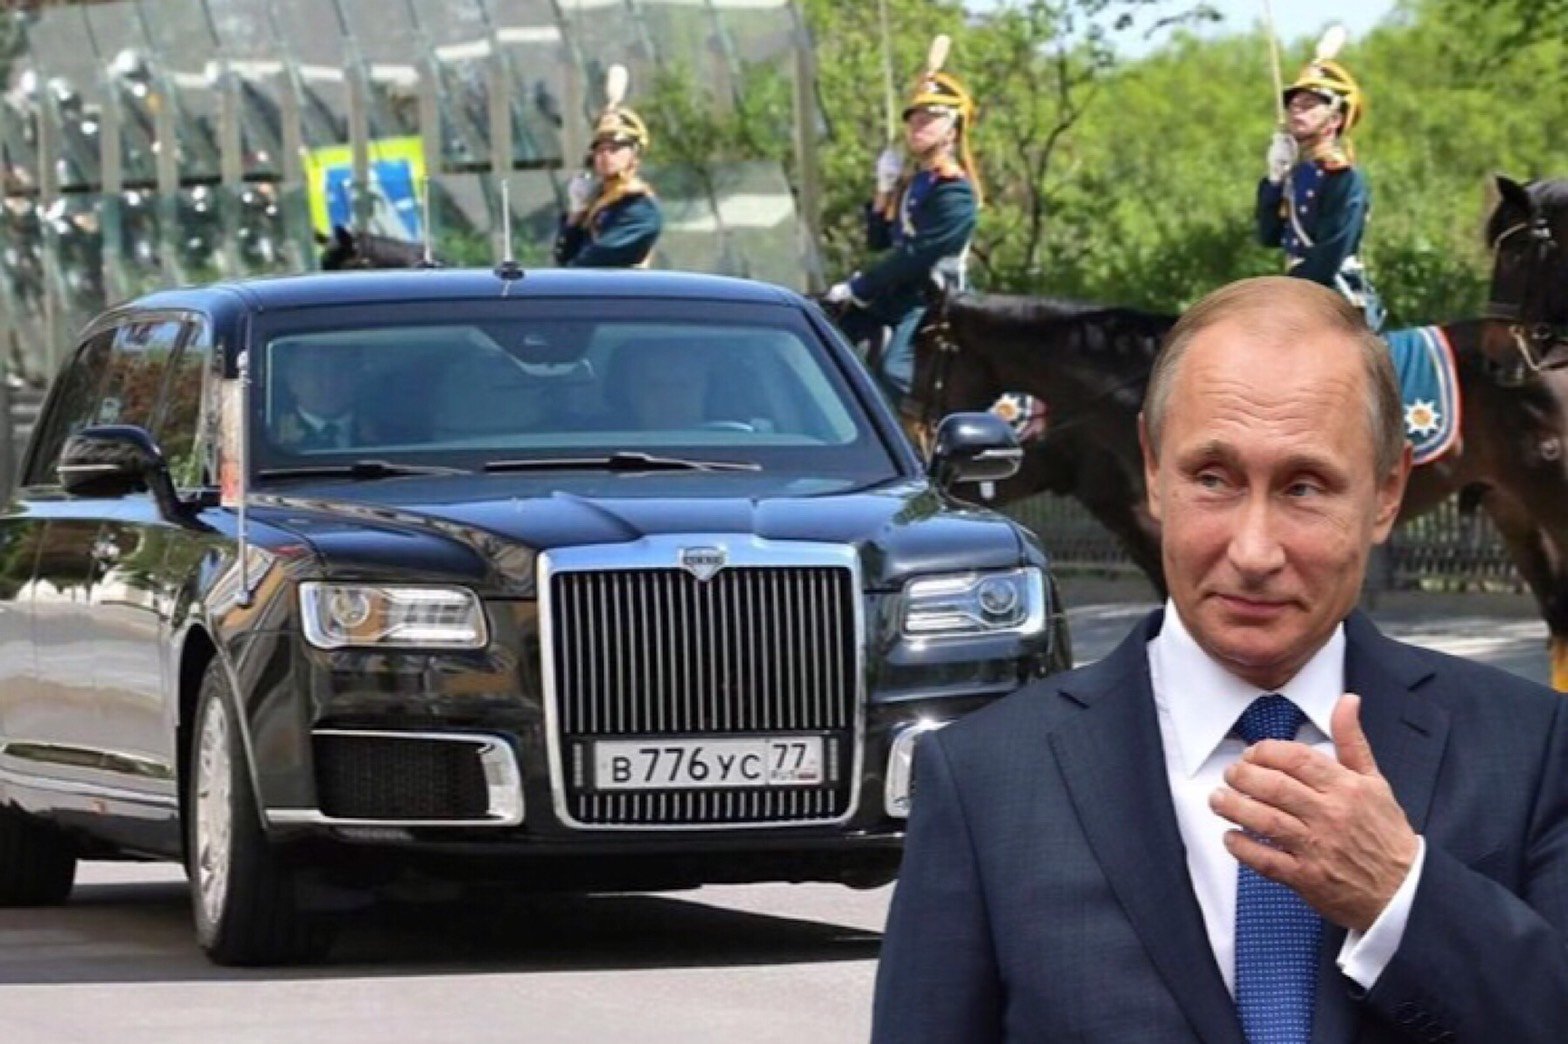 AURUS SENAT LIMOUSINE รถหุ้มเกราะของประธานาธิบดีปูติน รัสเซีย